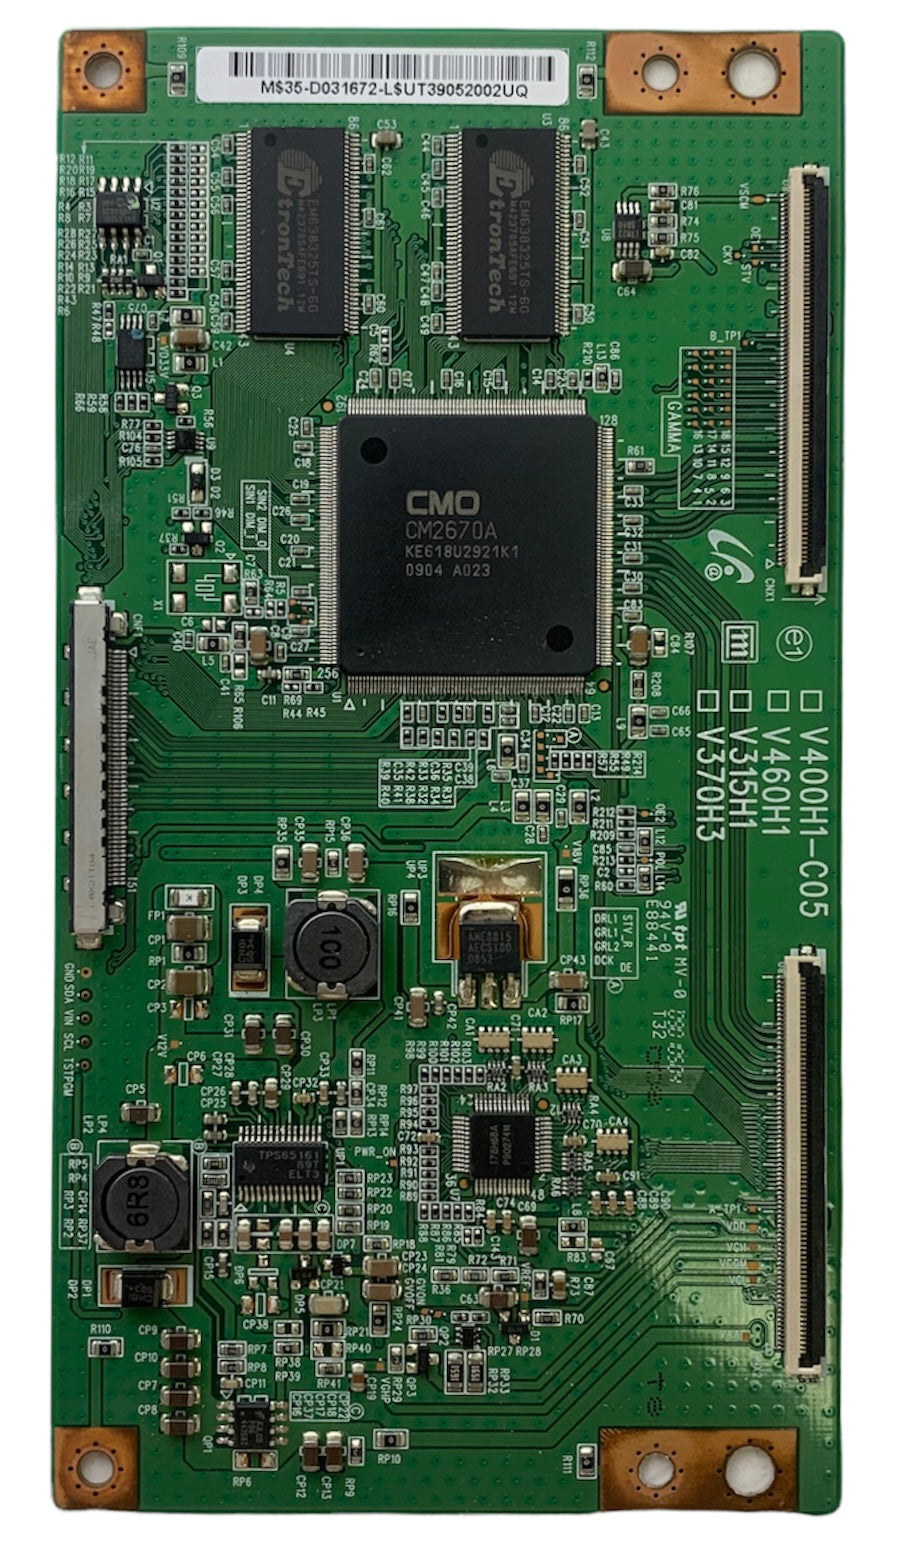 CMO 35-D031672 (V400H1-C05, V460H1, V315H1, V370H3) T-Con Board